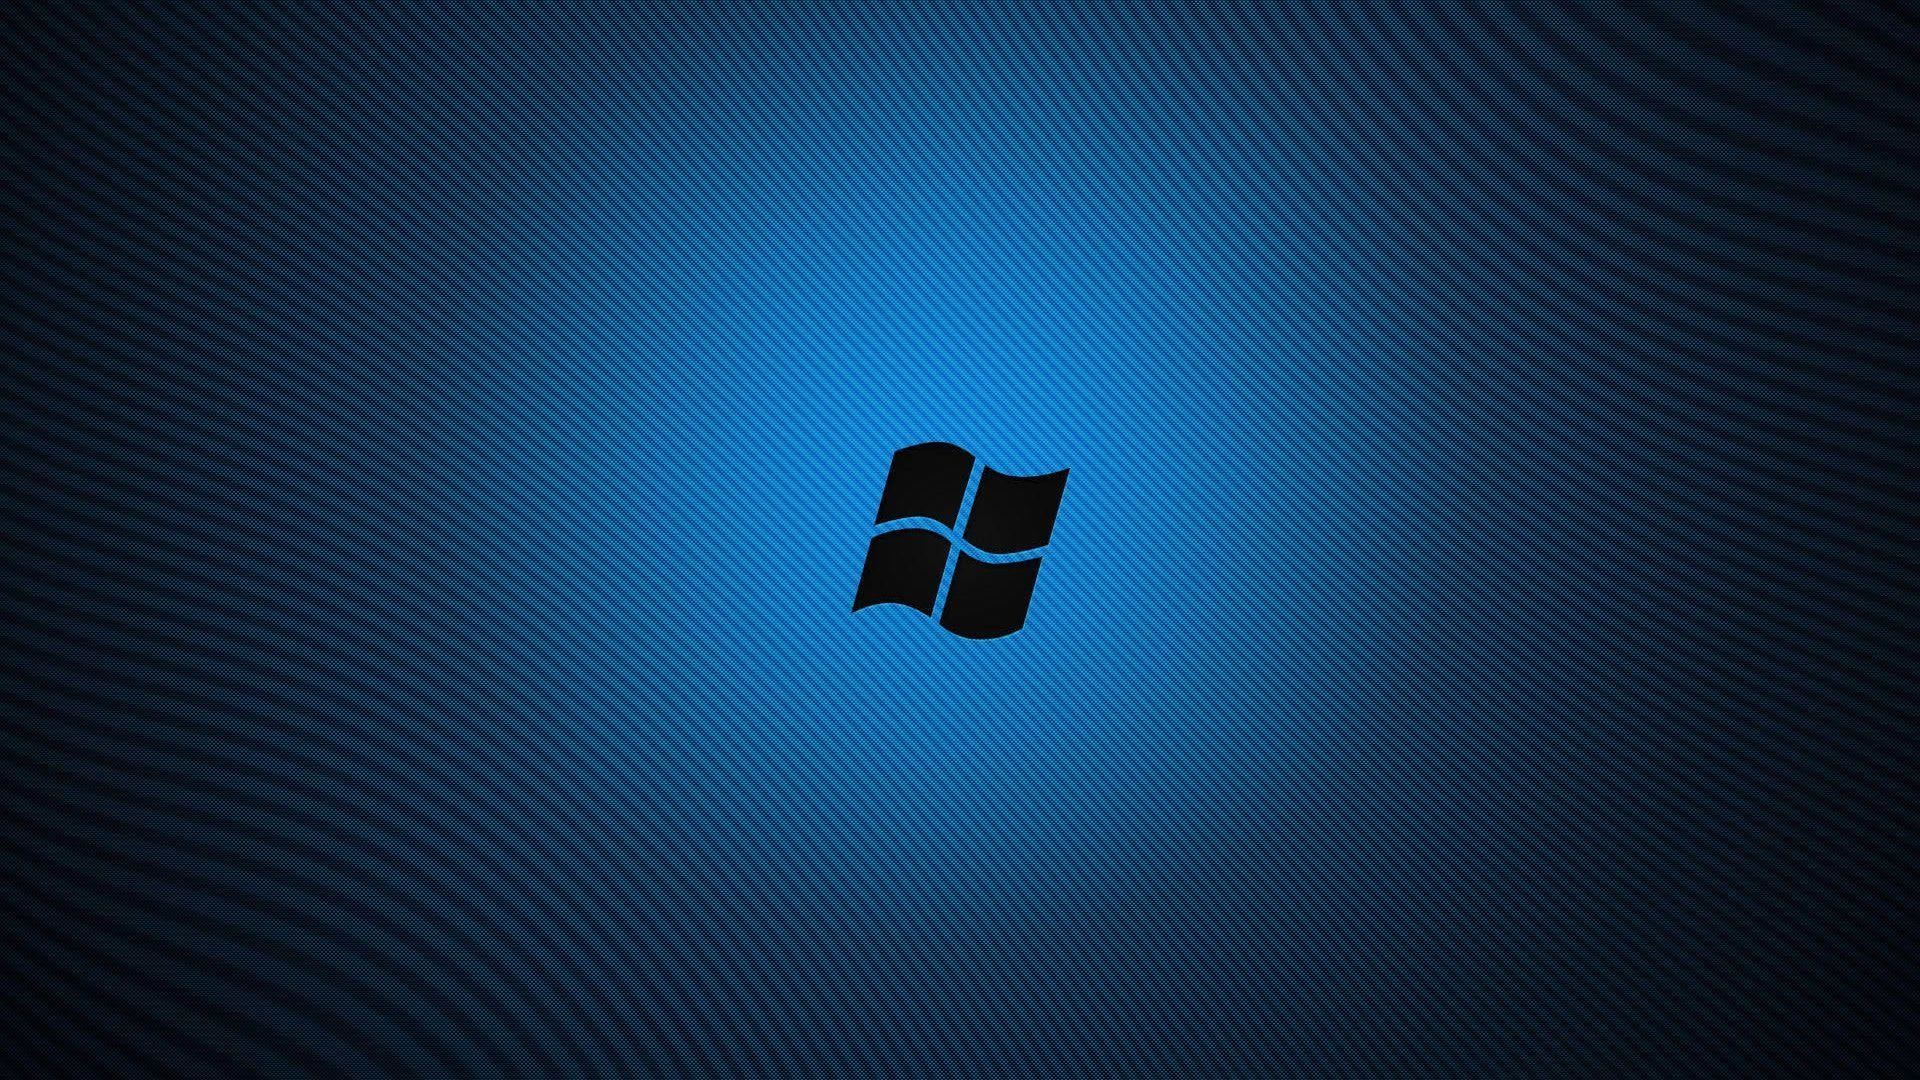 Windows 8 Blue Desktop Backgrounds | Widescreen Wallpapers| High .